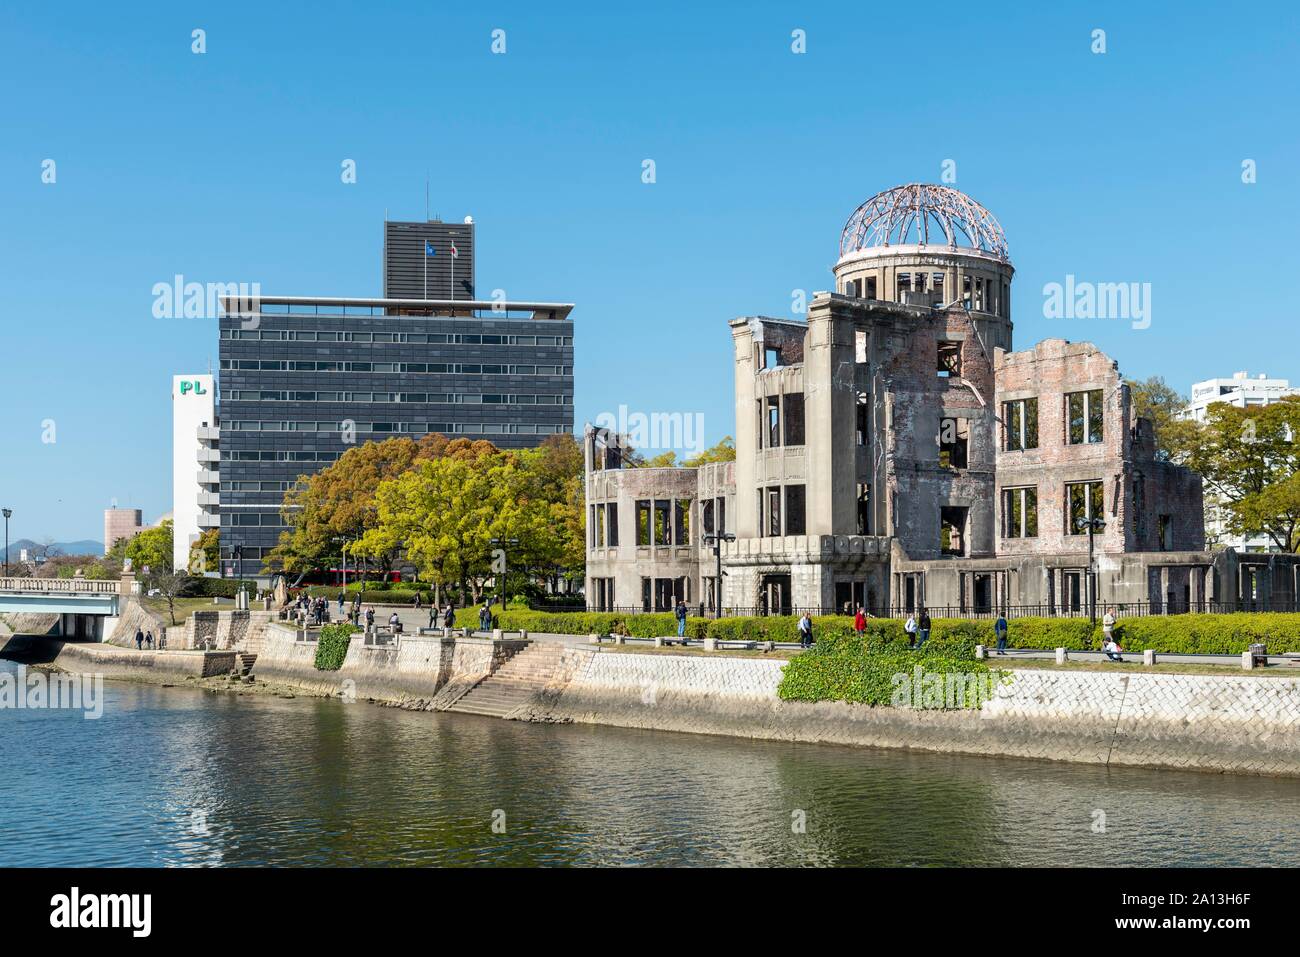 La cupola della bomba atomica, solo in piedi rovina di un edificio presso il sito della bomba atomica nella Seconda Guerra Mondiale, la Cupola della Bomba Atomica, monumento di pace, pace di Hiroshima Foto Stock